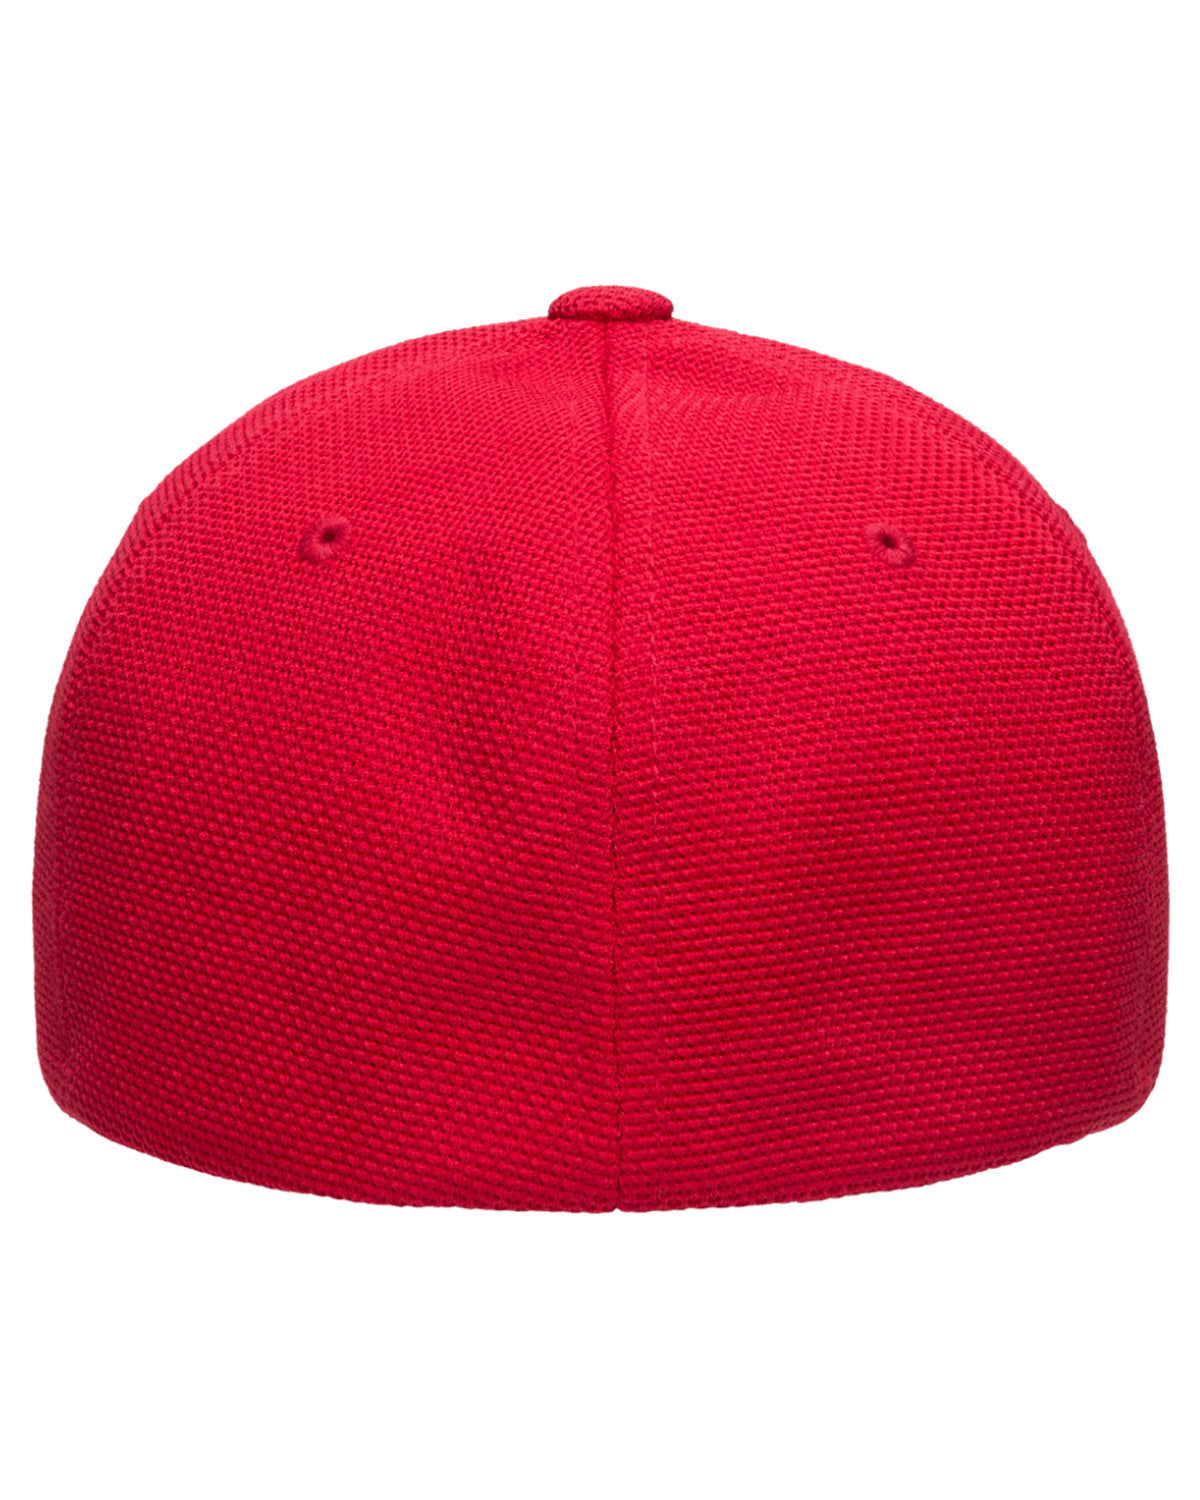 Flexfit Cool & Dry Pique Mesh Custom Caps, Red